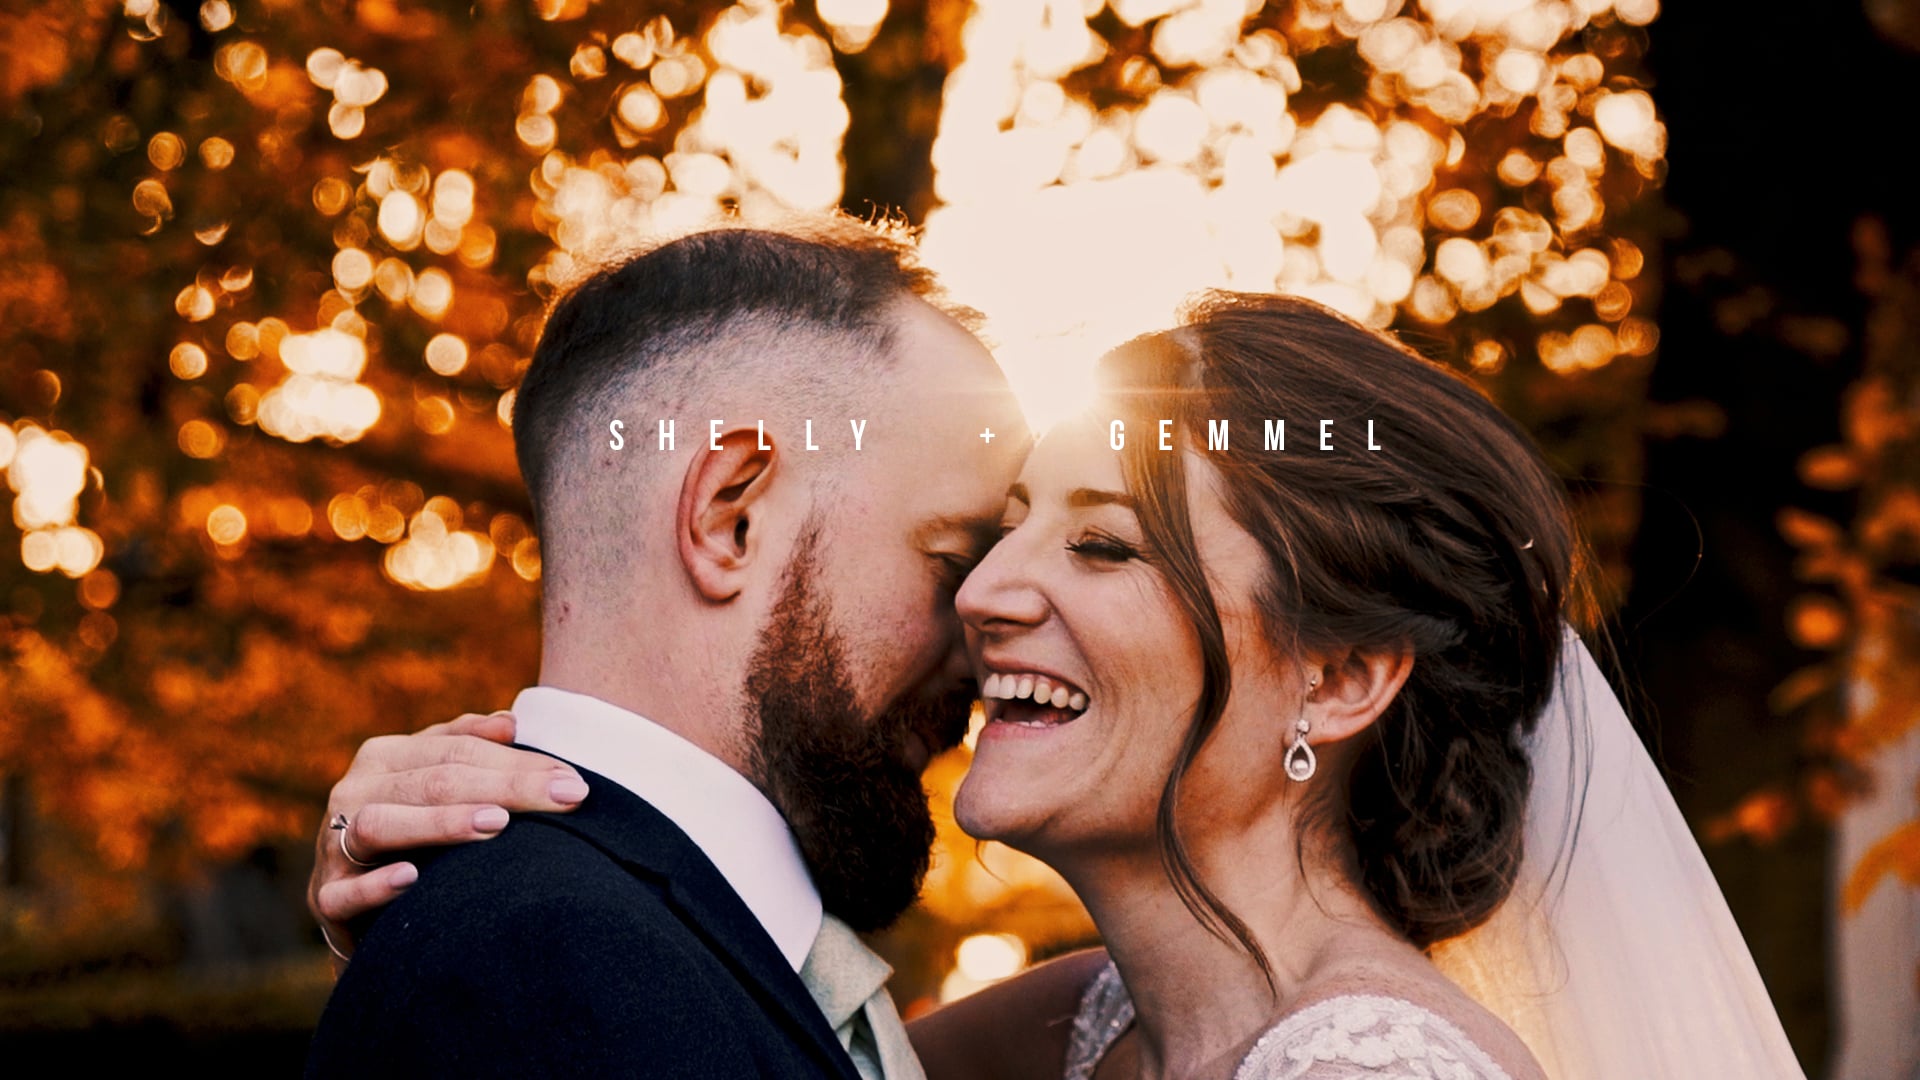 Shelly & Gemmel  |  The Wedding Film